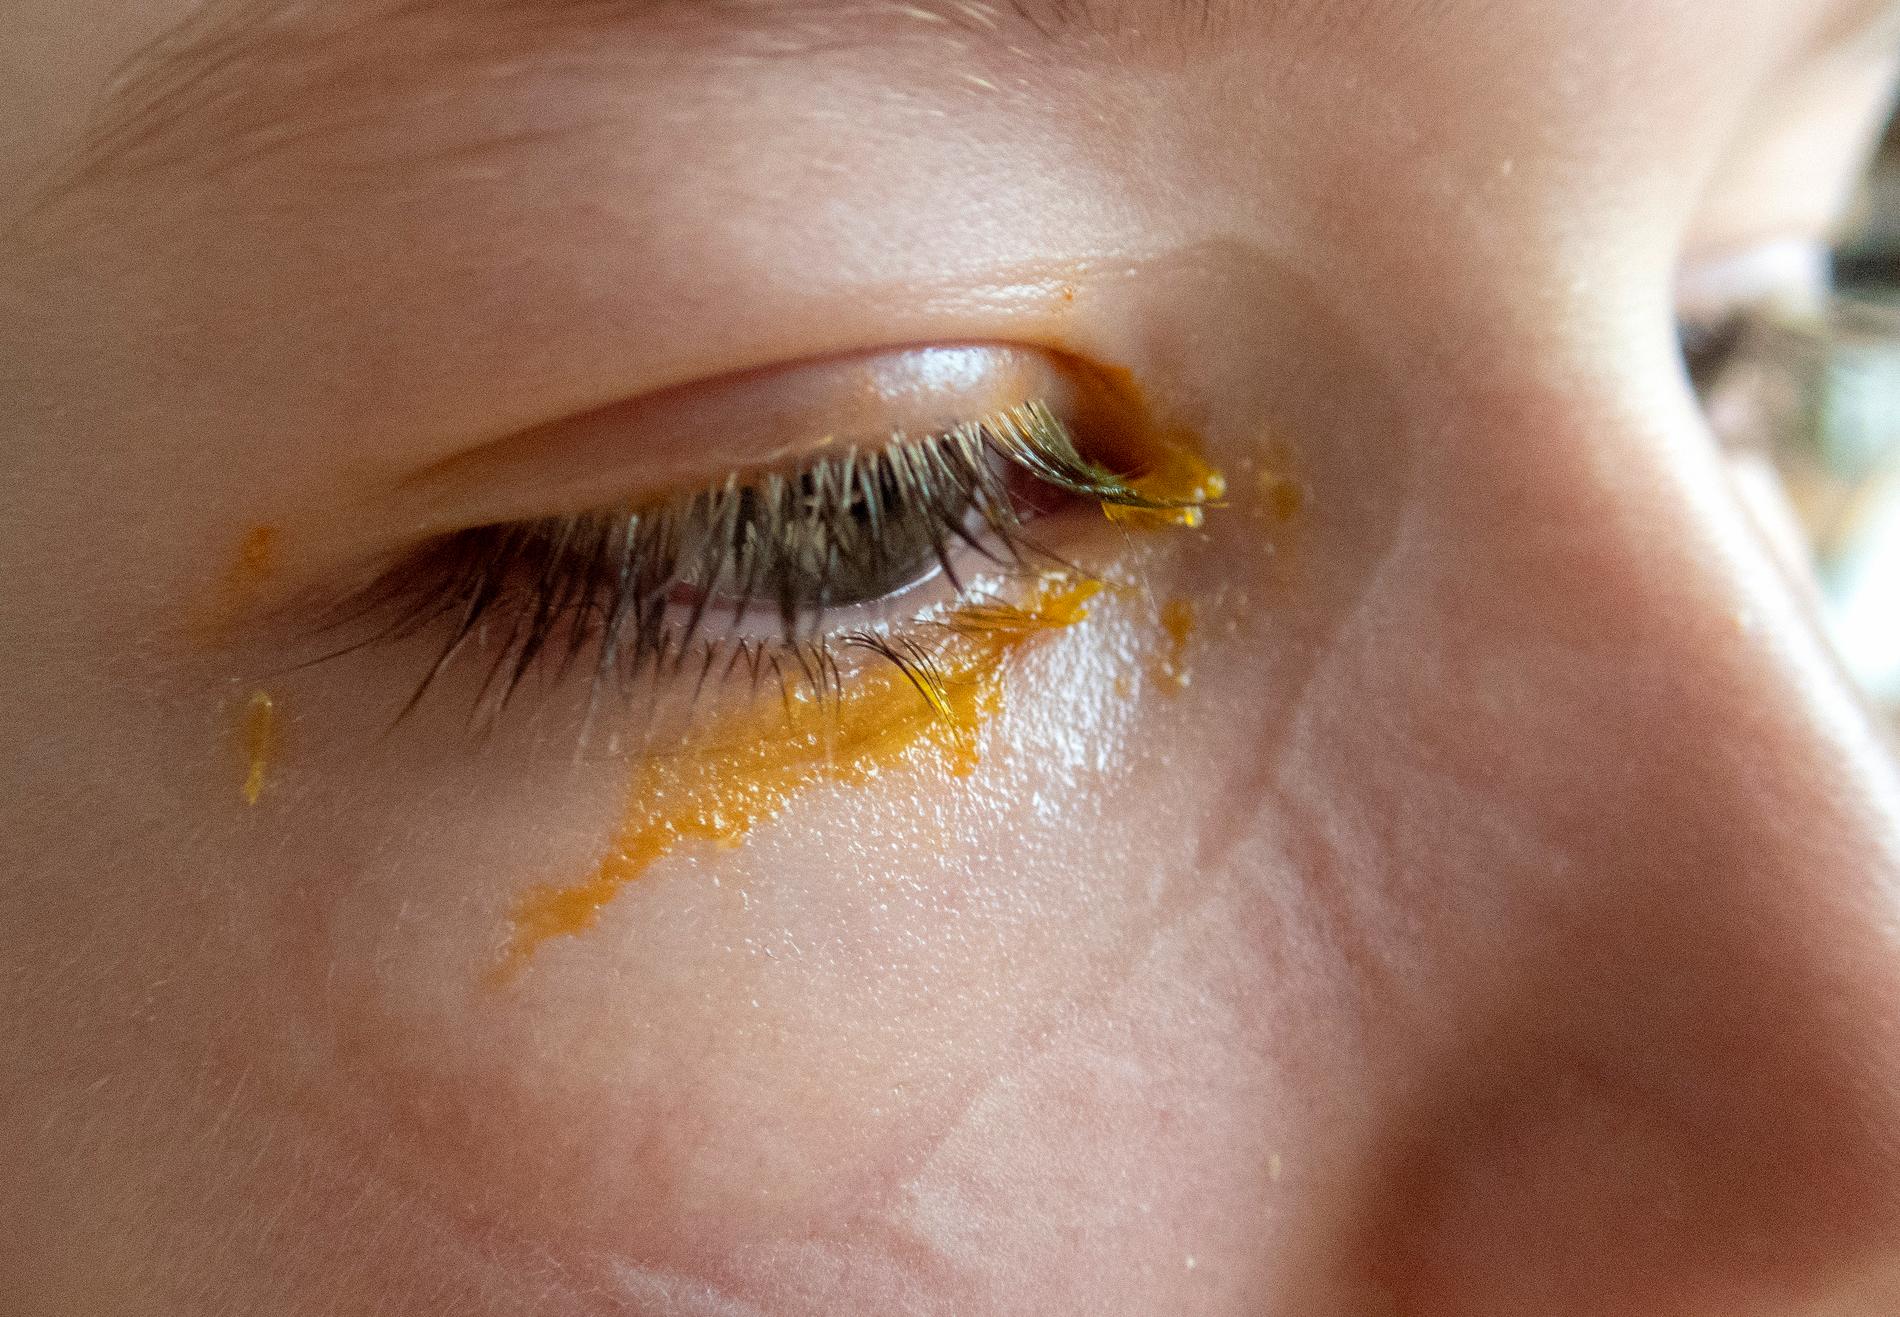 Huskur vid ögoninflammation: Tvätta ögonen med ljummet vatten och byt örngott varje dag. Låt barnet ha en egen handduk så att smittan inte sprids.